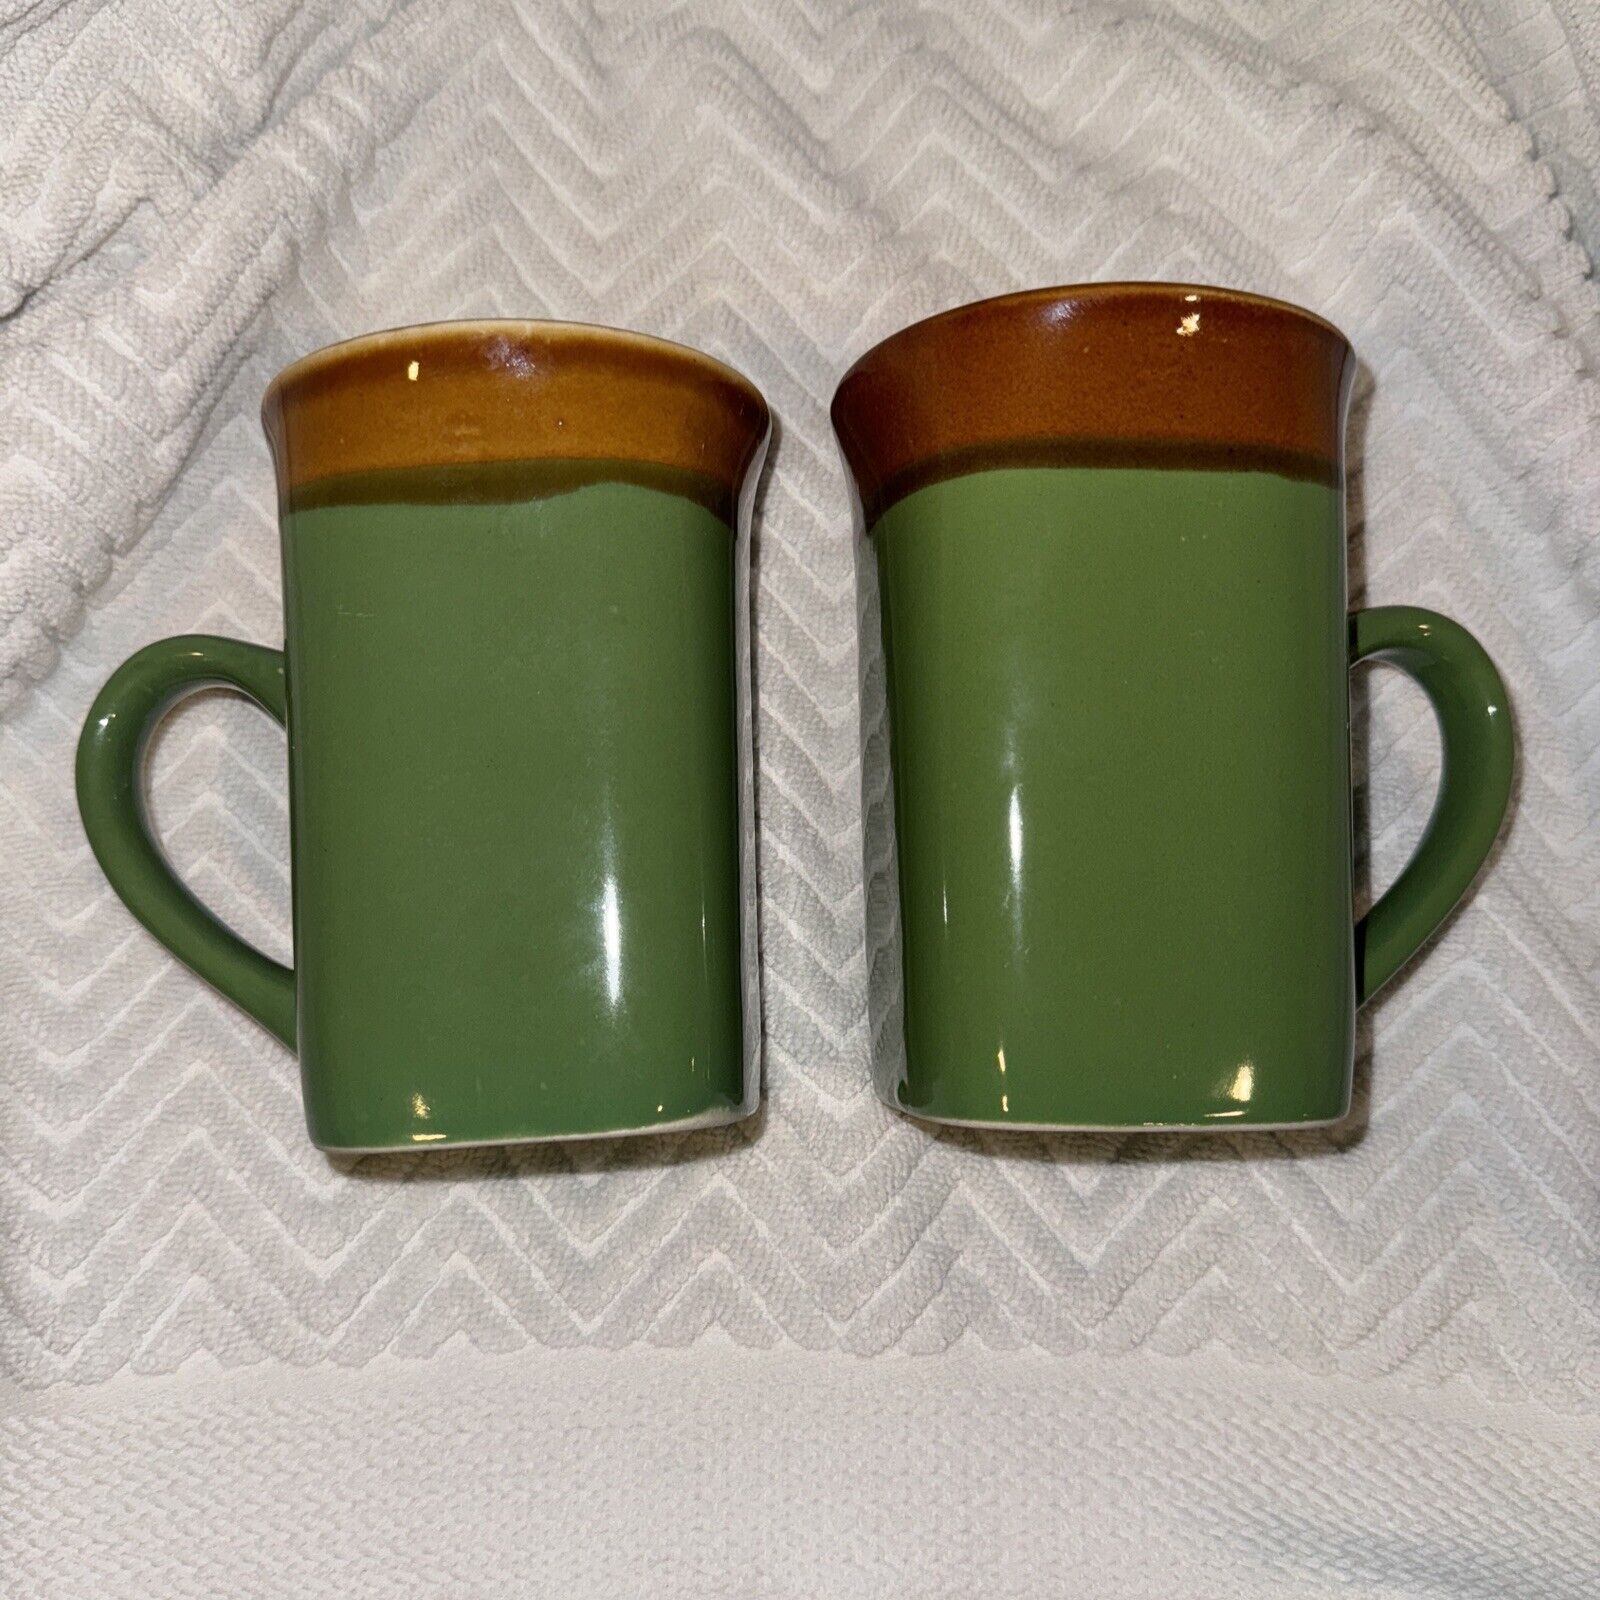 Royal Norfolk 14 oz Green/Brown Stoneware Mugs Set of 2